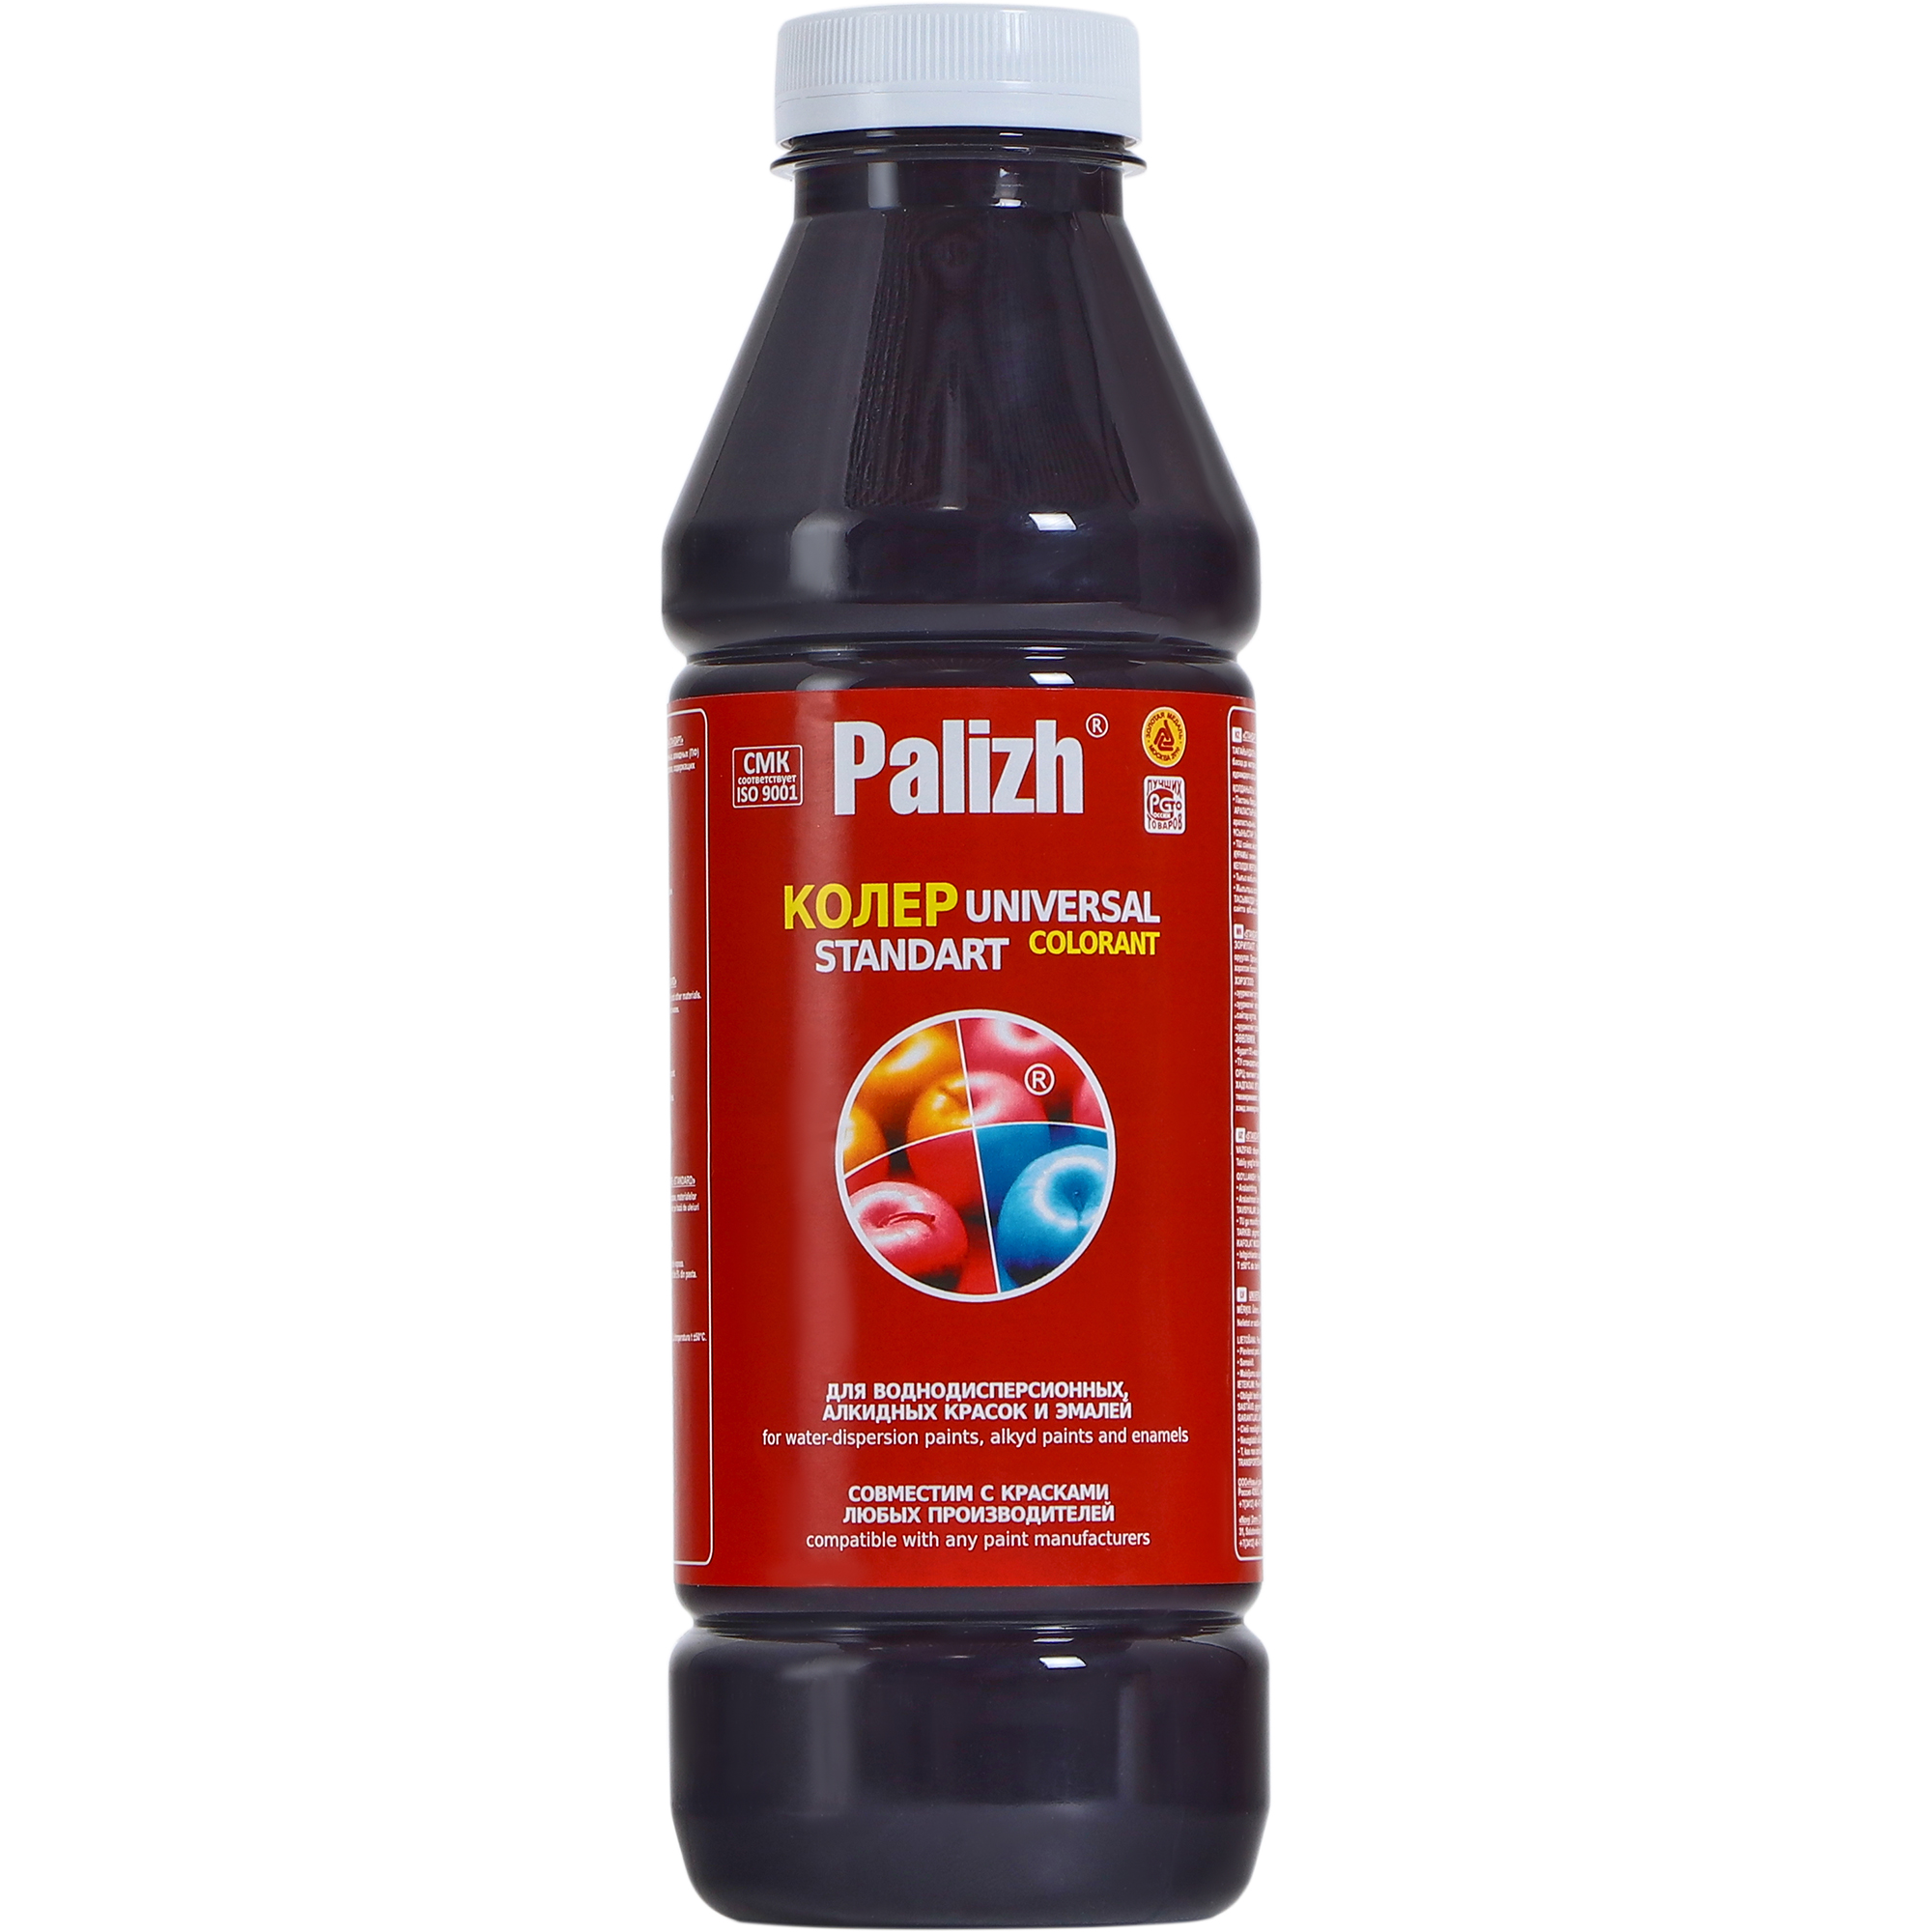 Паста универсальная колеровочная Palizh черника - 900 мл паста универсальная колеровочная palizh салатный 100 мл